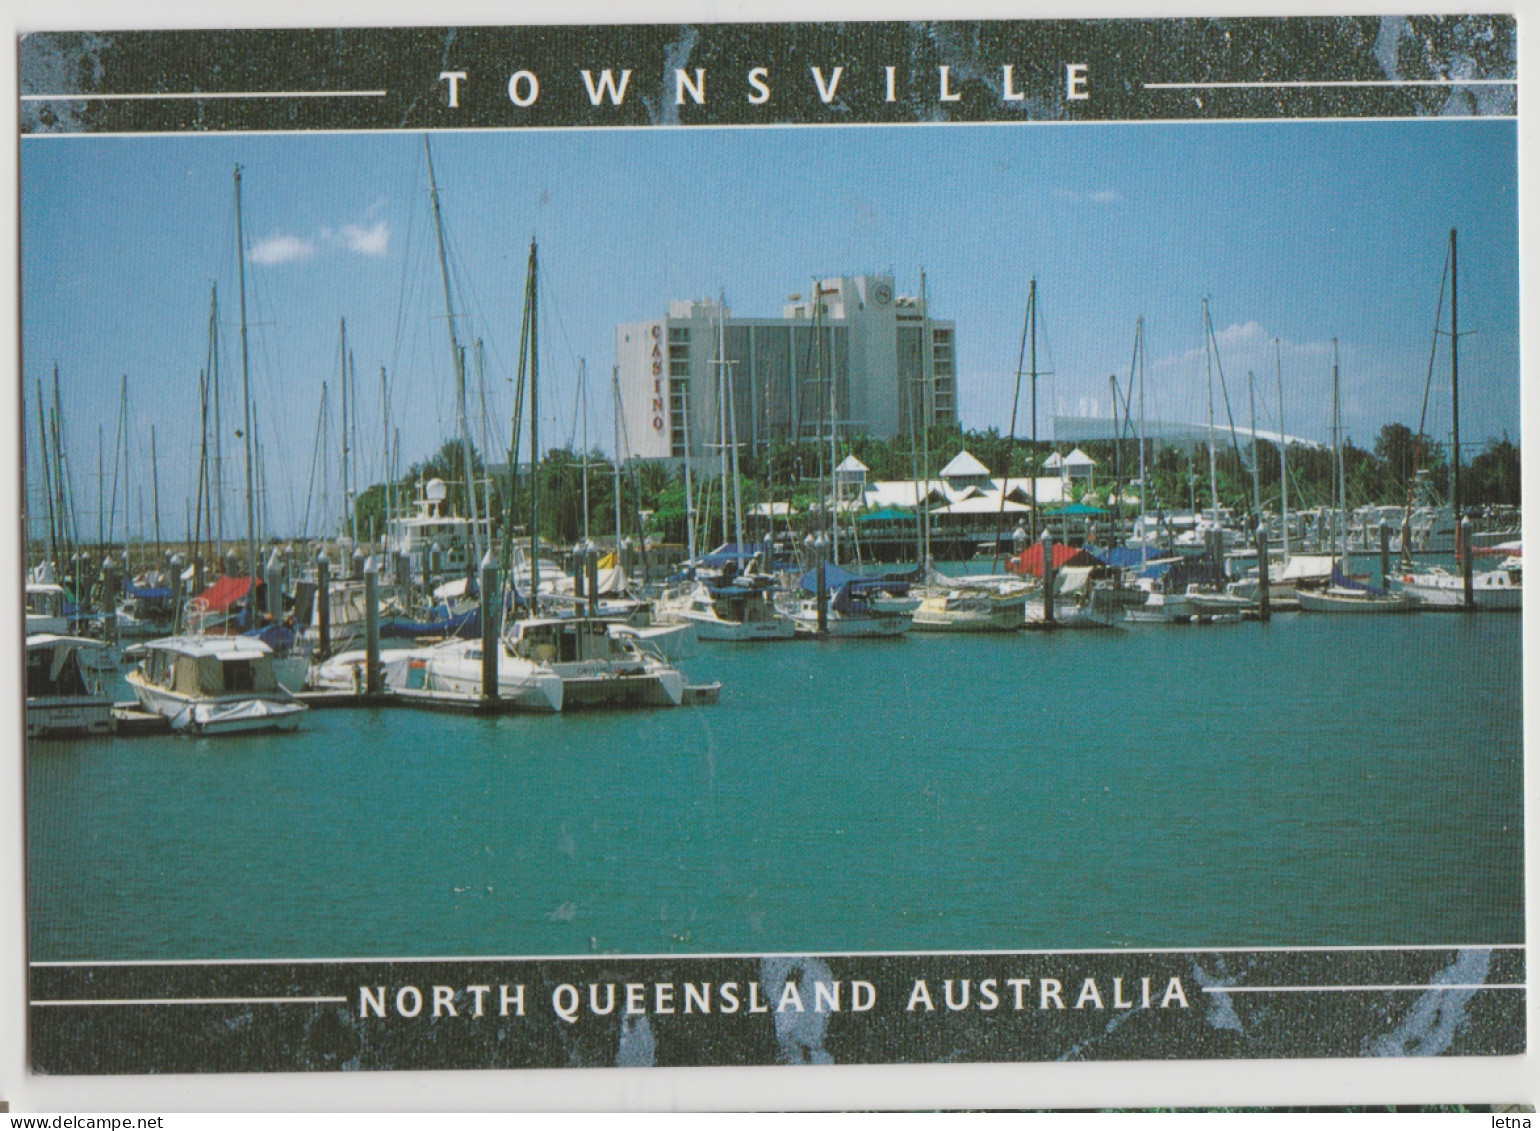 Australia QUEENSLAND QLD Casino & Yacht Marina TOWNSVILLE Murray Views TV44 Postcard C1990s - Townsville